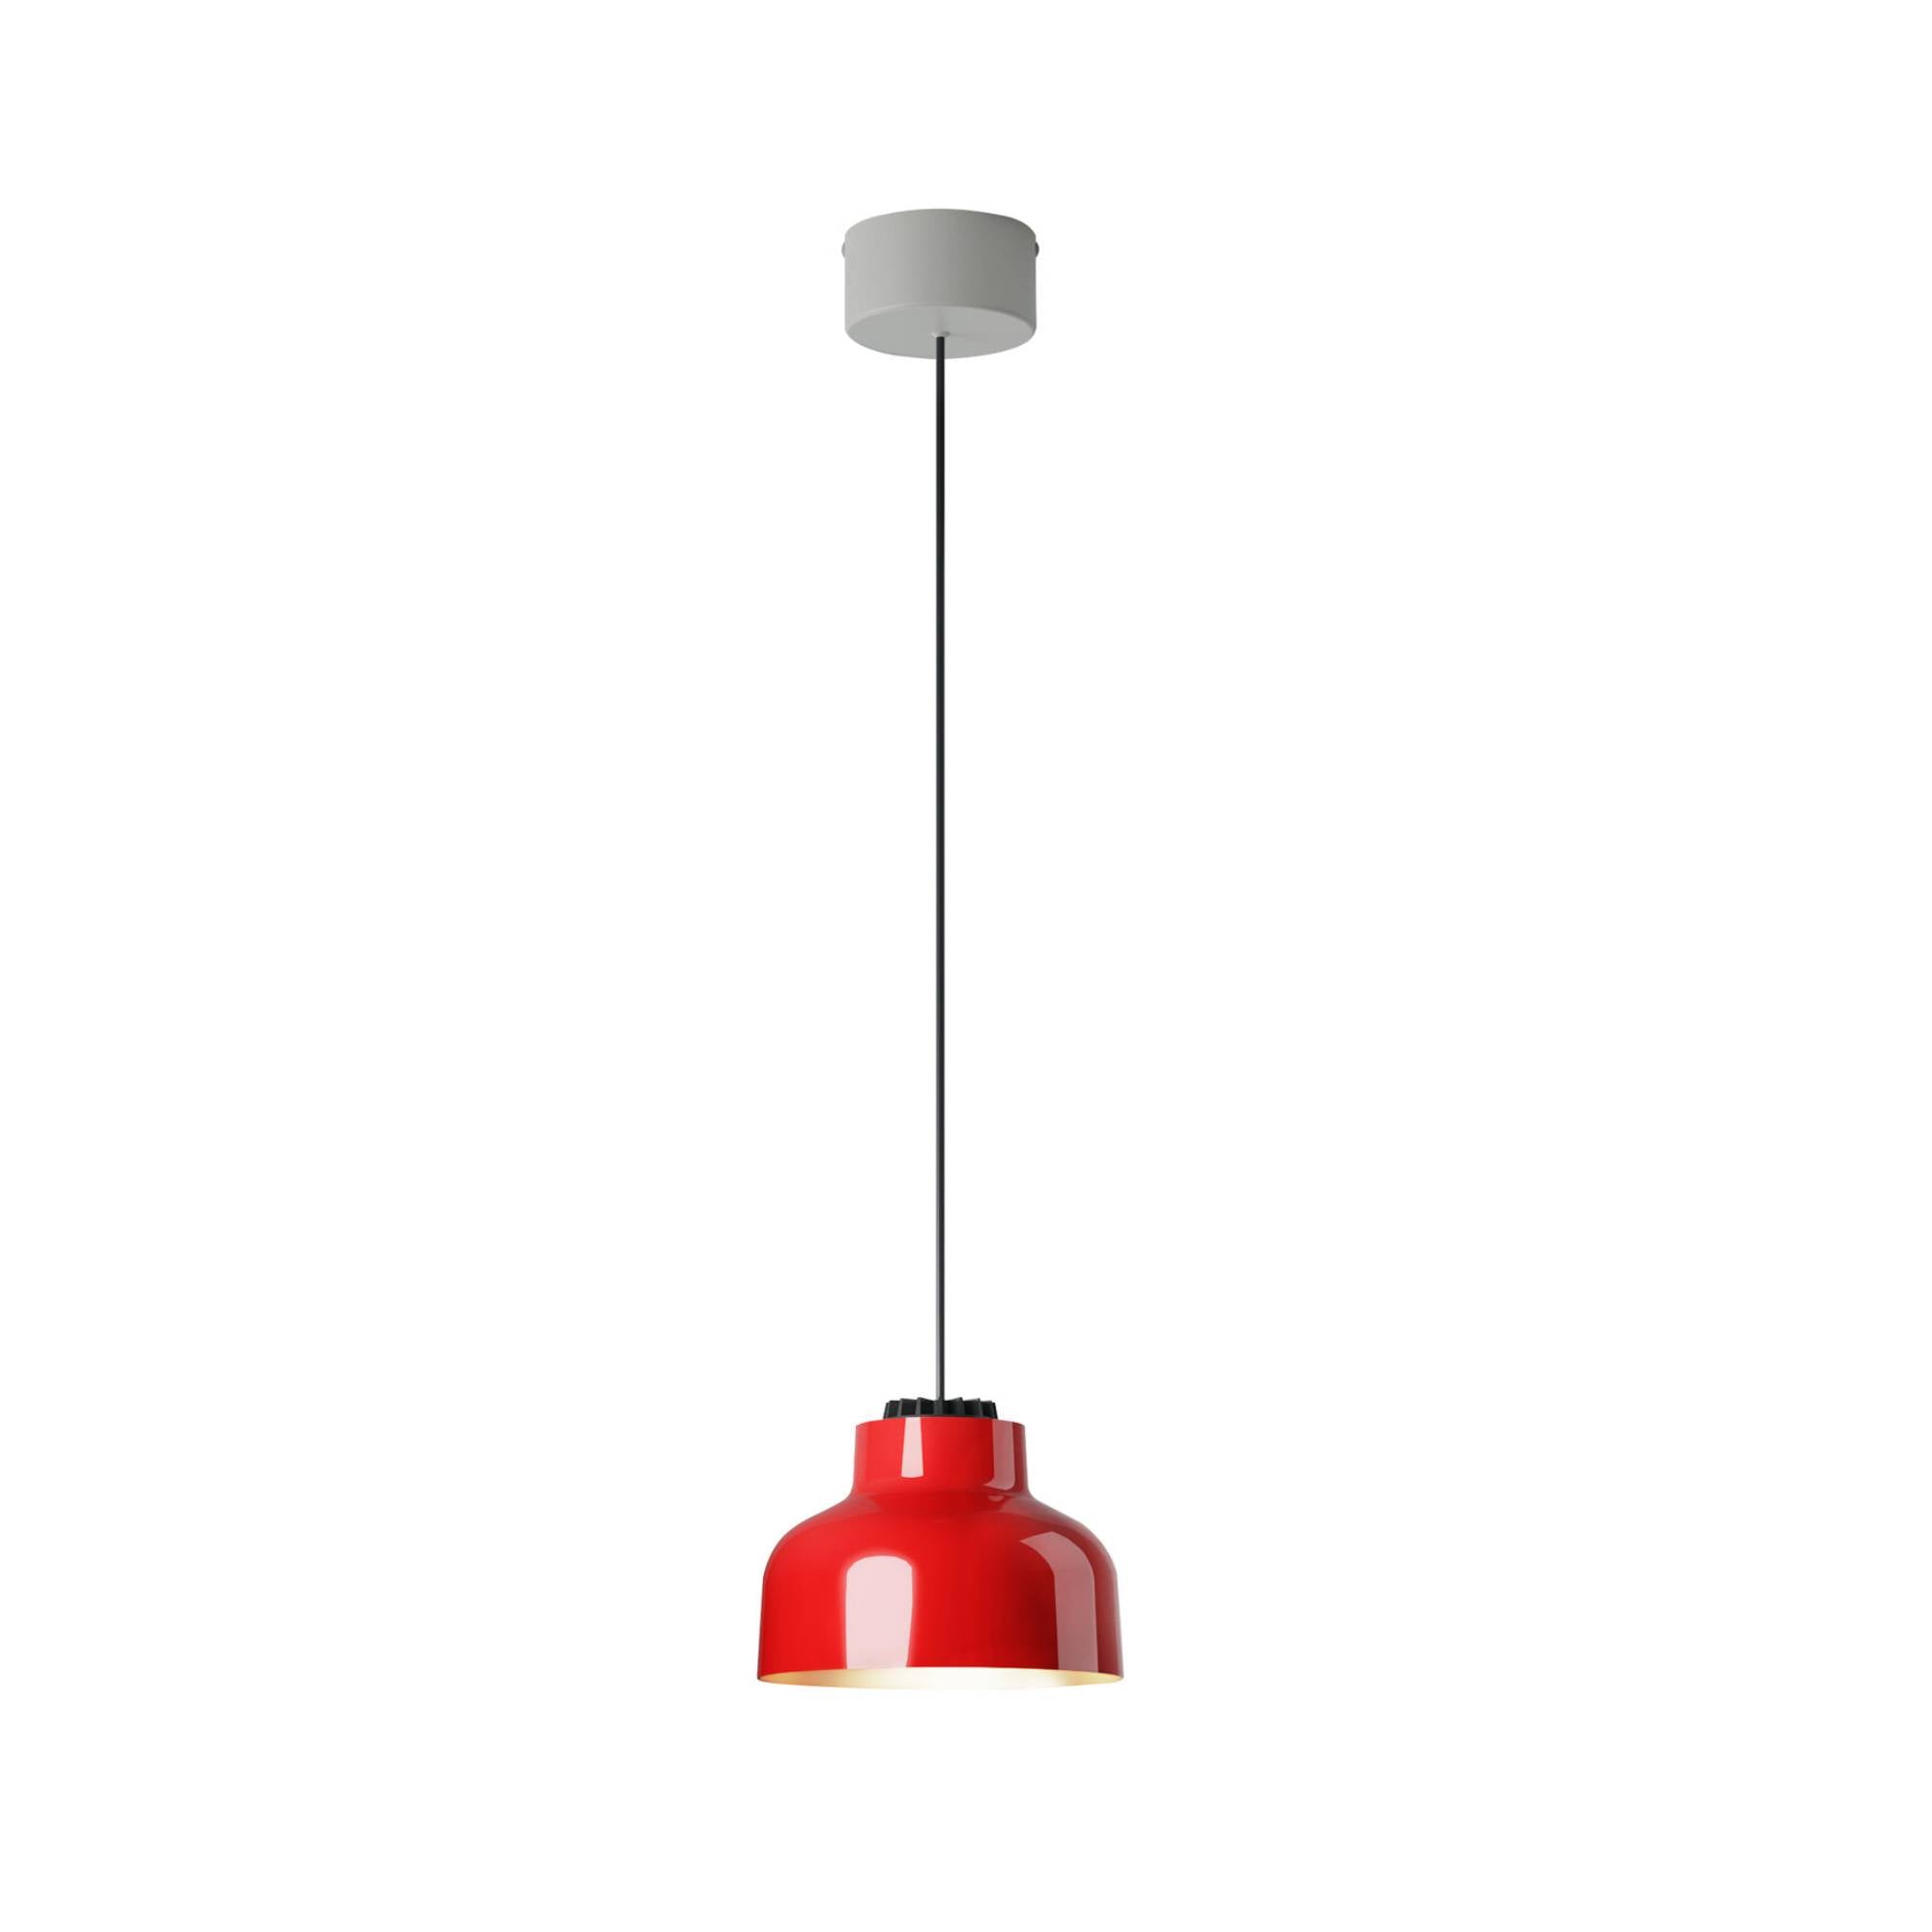 M64 Pendant Lamp: Brilliant Red Aluminum + White